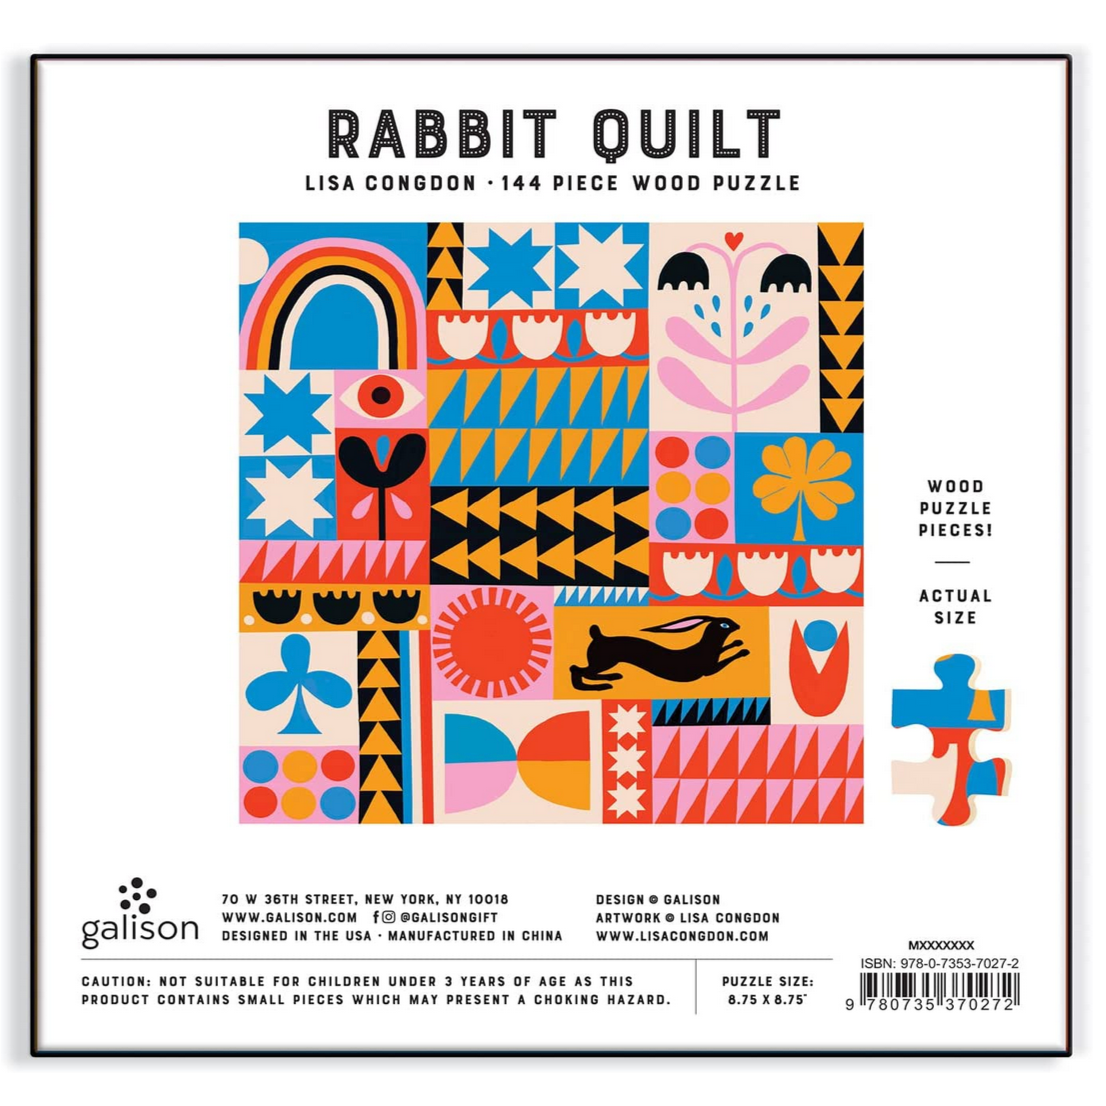 Lisa Congdon Rabbit Quilt Wood Puzzle 144pcs -all ages